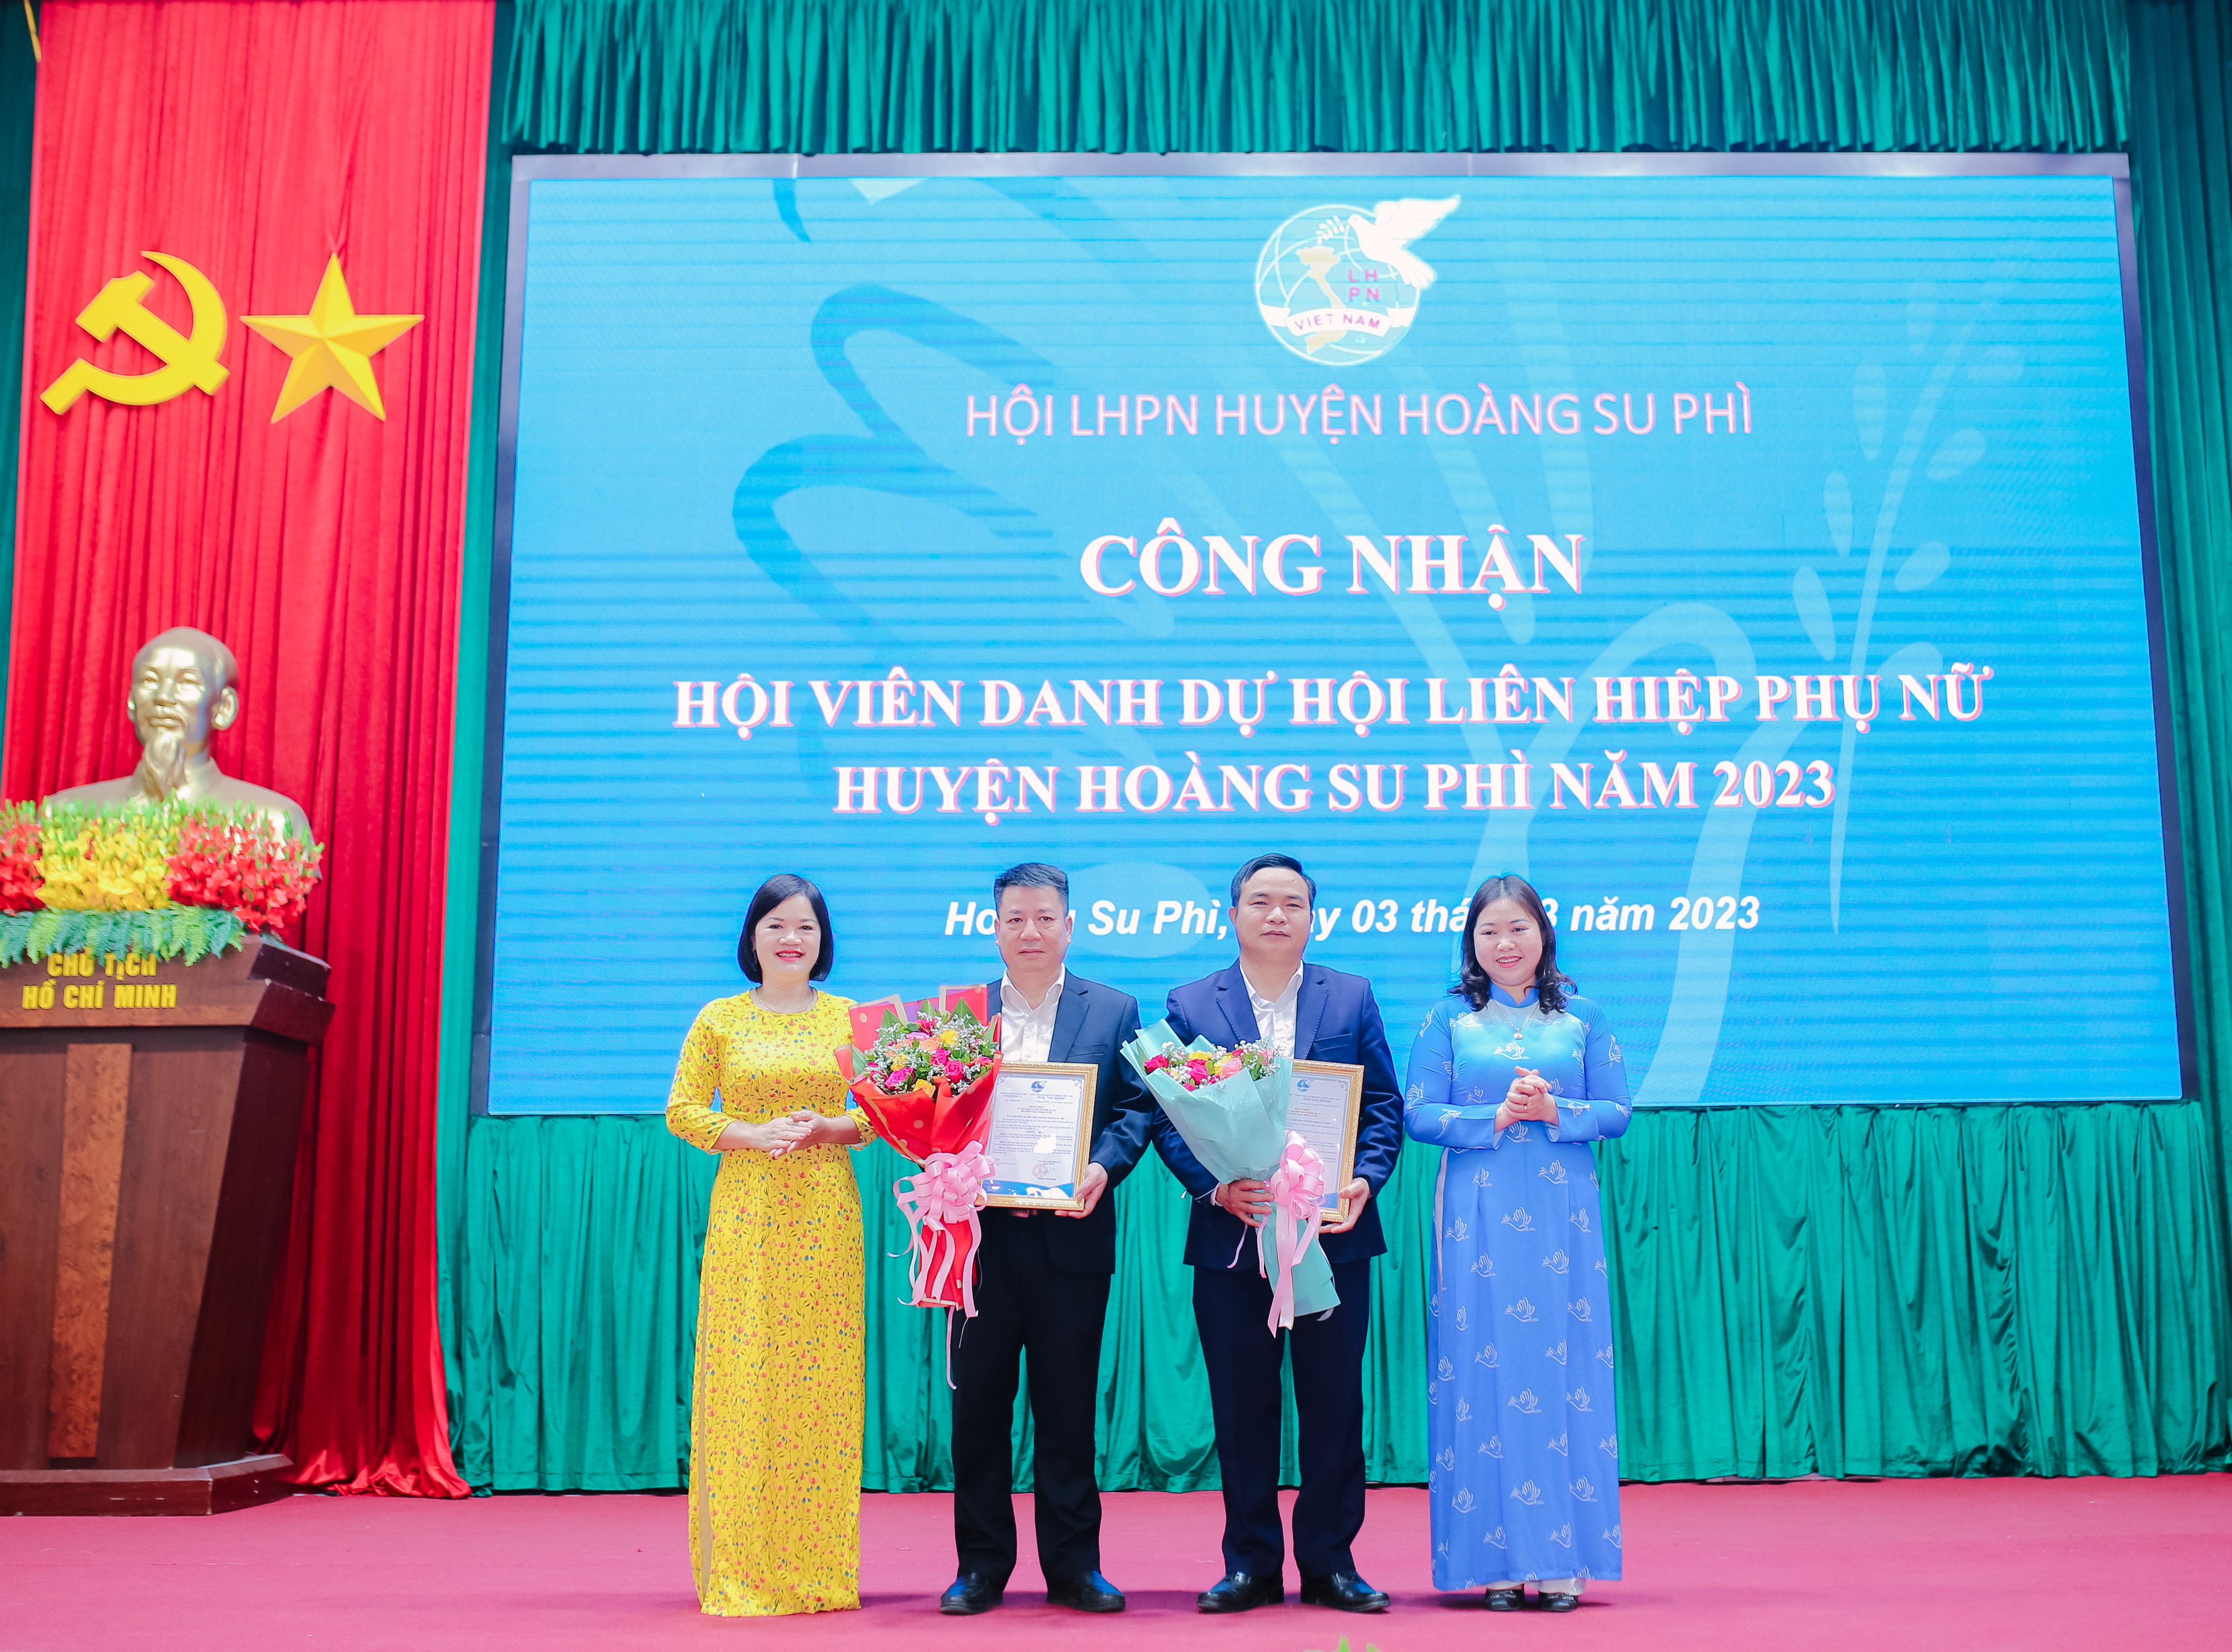 Hội LHPN huyện Hoàng Su Phì công nhận hội viên danh dự